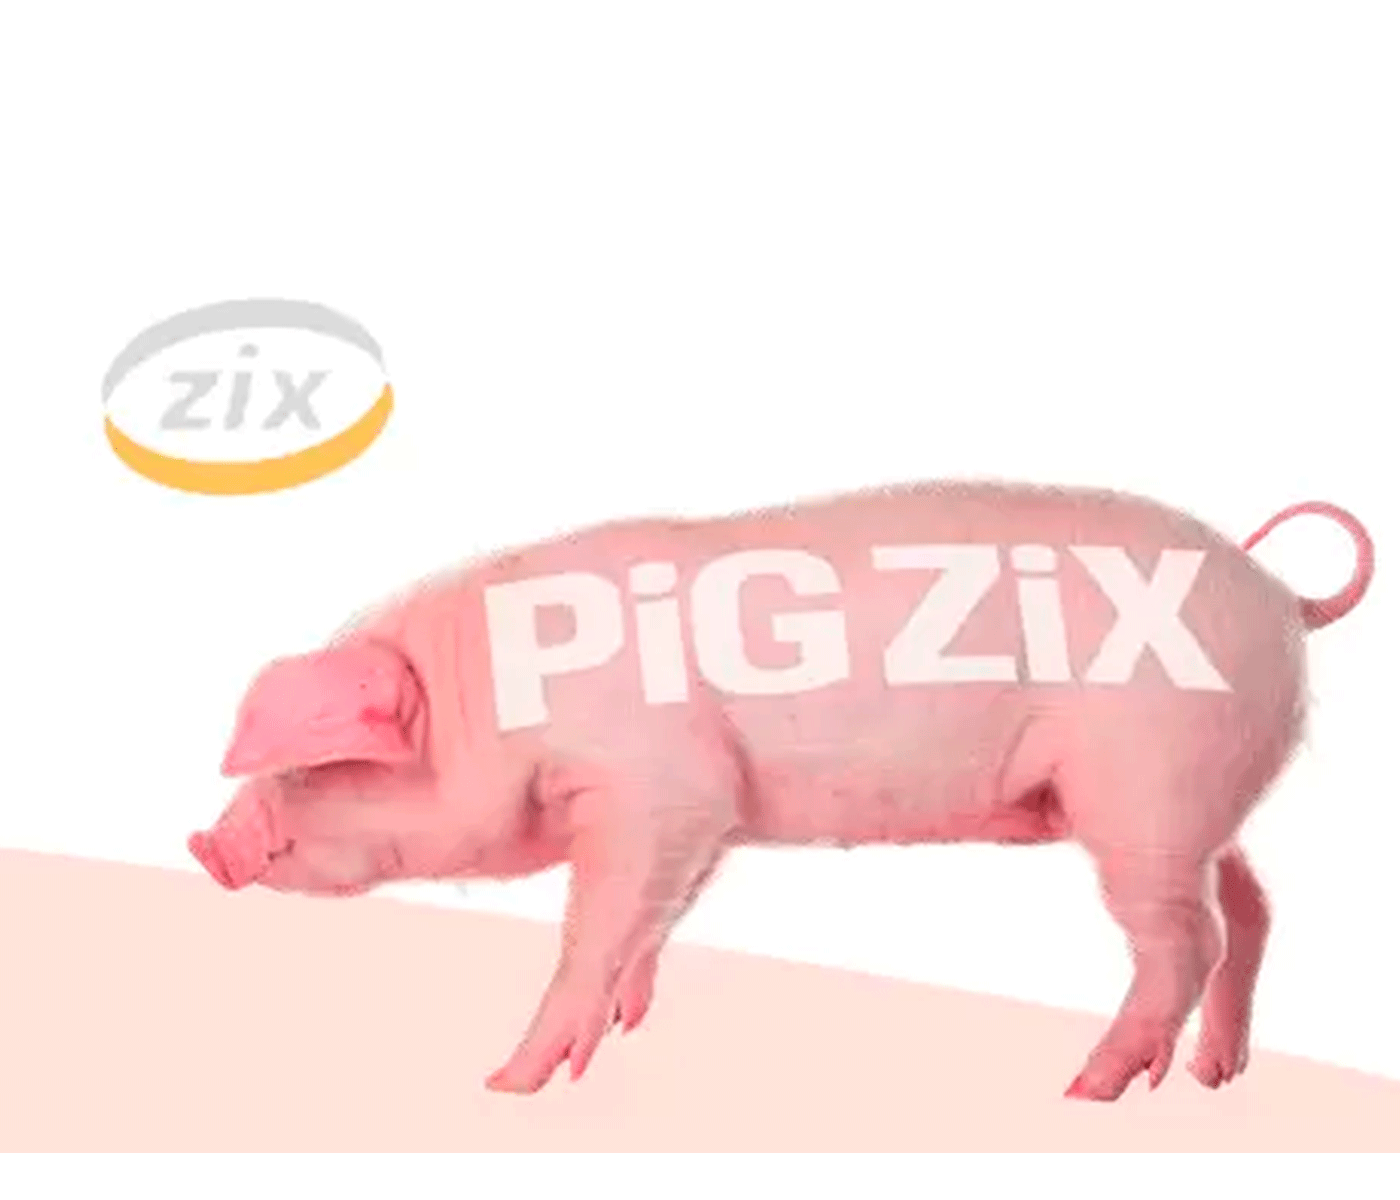 PIG ZIX, premezcla de aditivos para cerdos